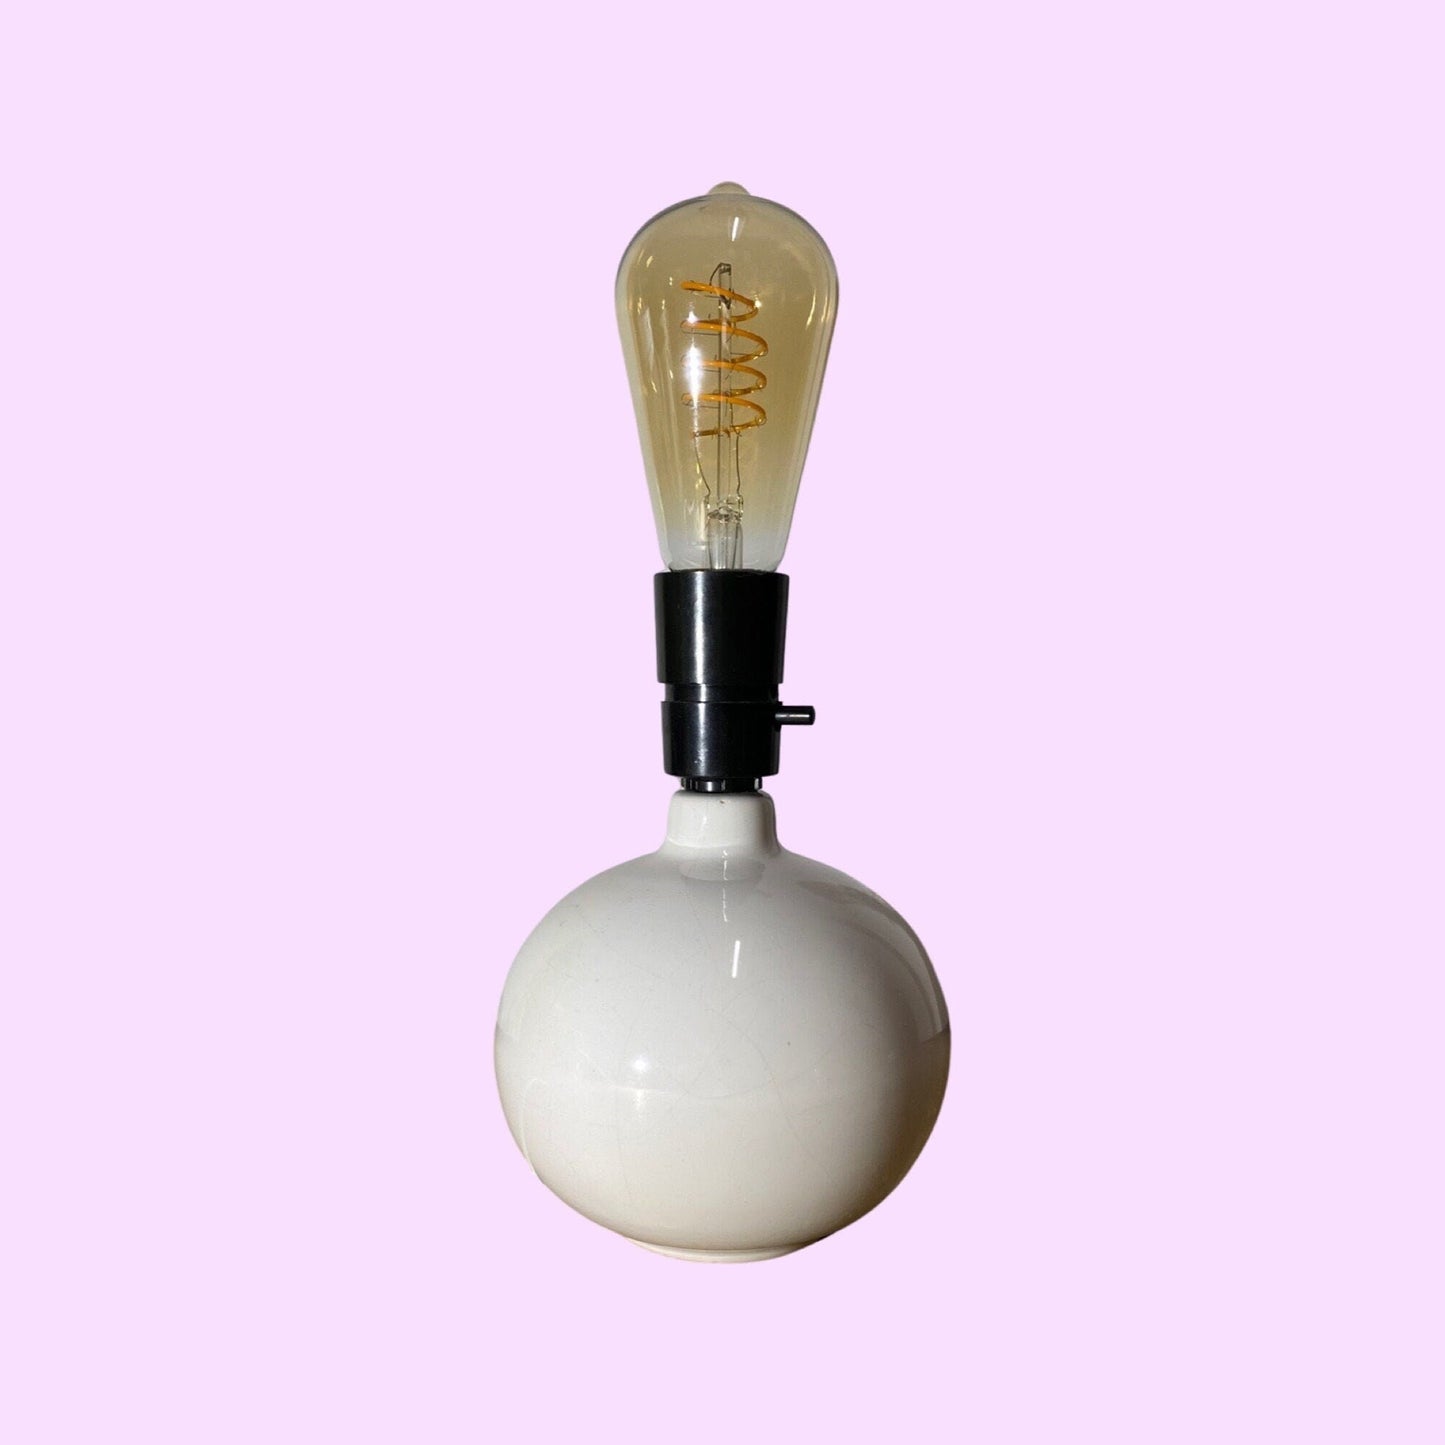 White Vintage Danish Ball Shaped Desk Light | Scandinavian Table Lamp From The Mid Century Made In Denmark | White Ceramic Pottery Lighting